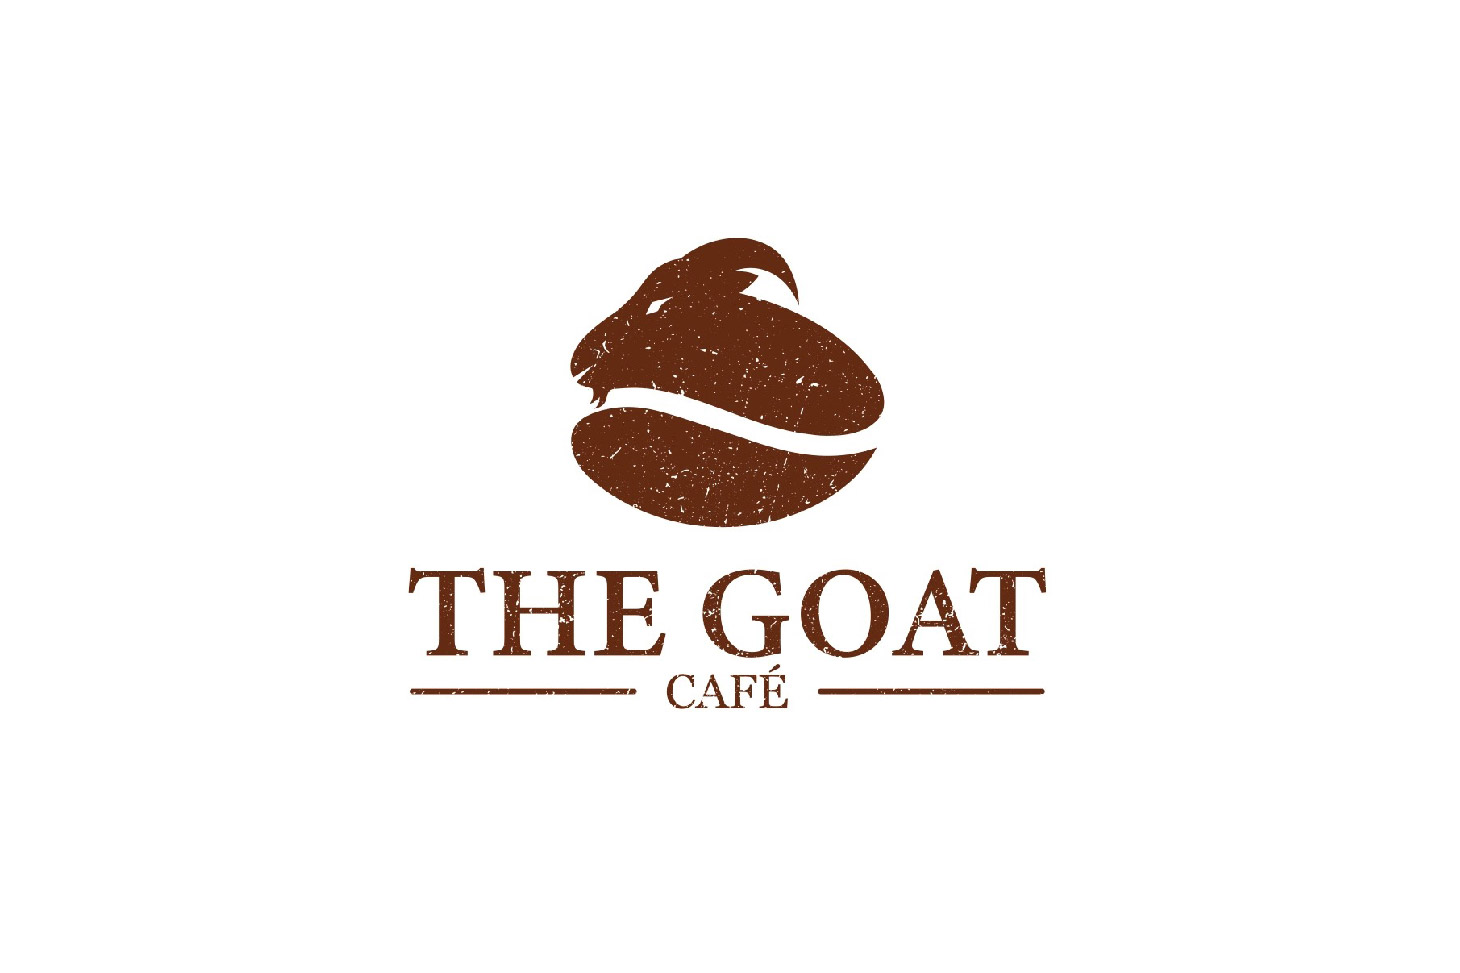 thiết kế logo thương hiệu cafe